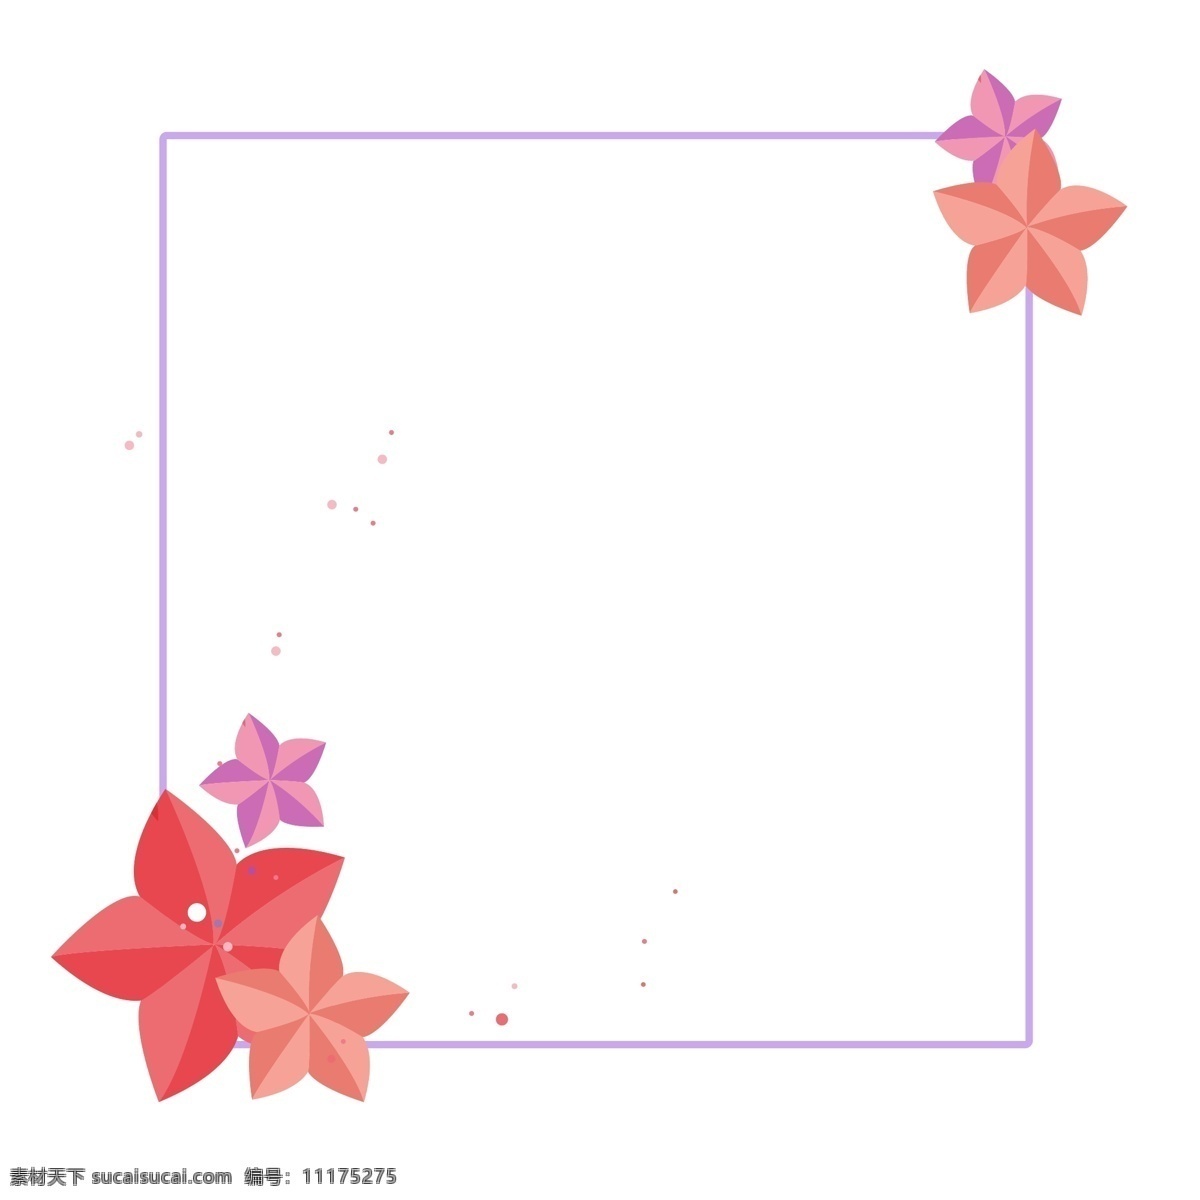 卡通 花朵 装饰 边框 卡通边框 红色花朵 紫色边框 花朵边框 边框装饰 马卡龙边框 正方形边框